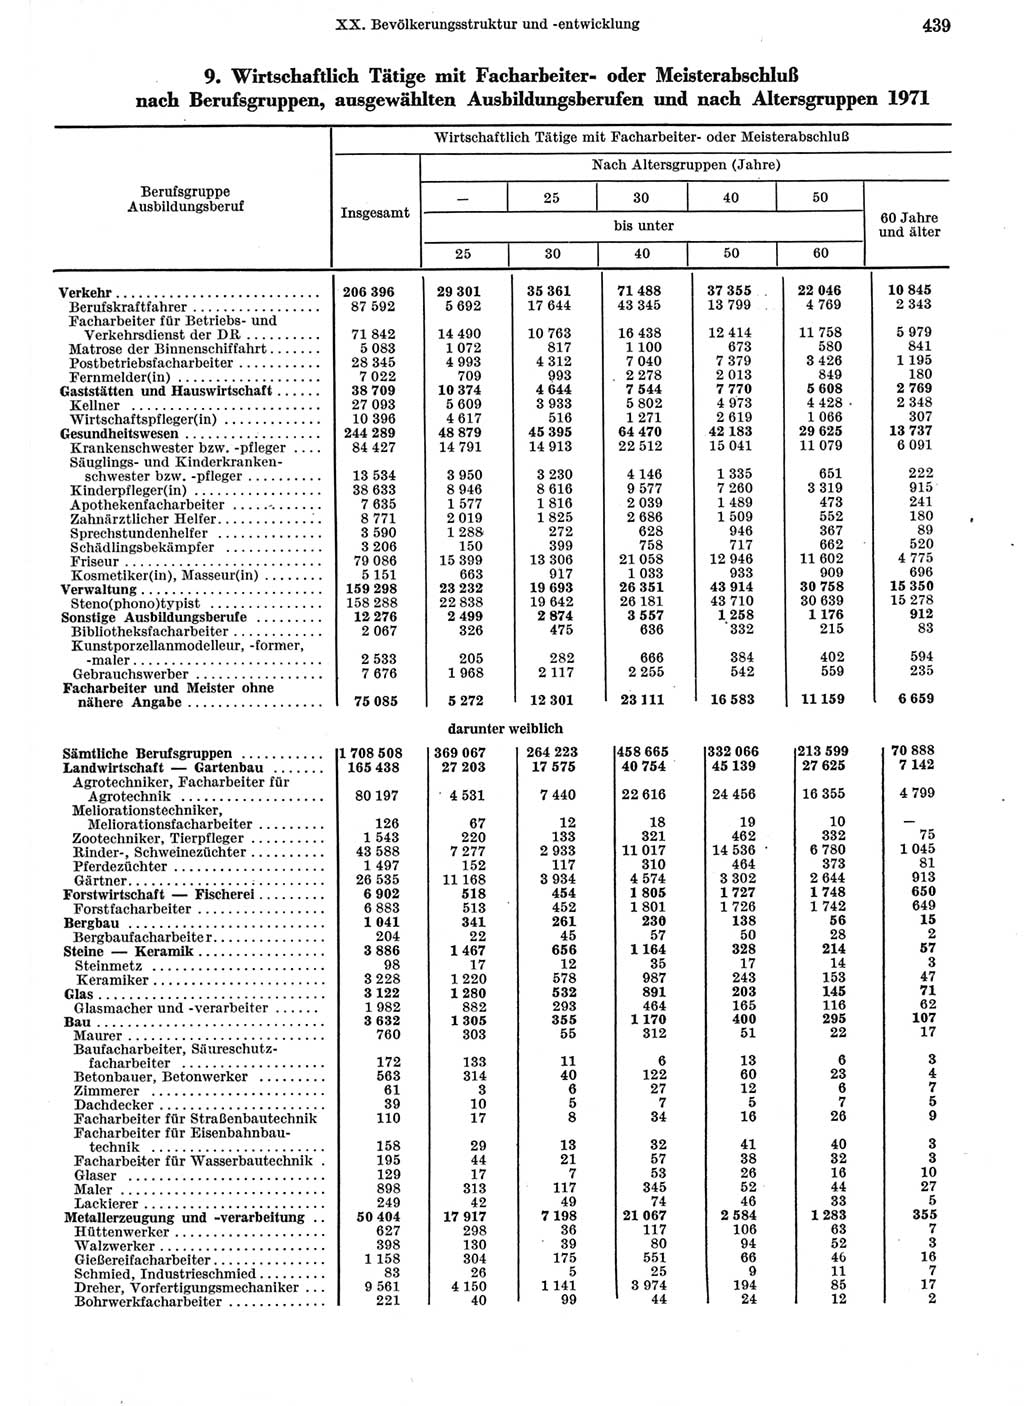 Statistisches Jahrbuch der Deutschen Demokratischen Republik (DDR) 1973, Seite 439 (Stat. Jb. DDR 1973, S. 439)